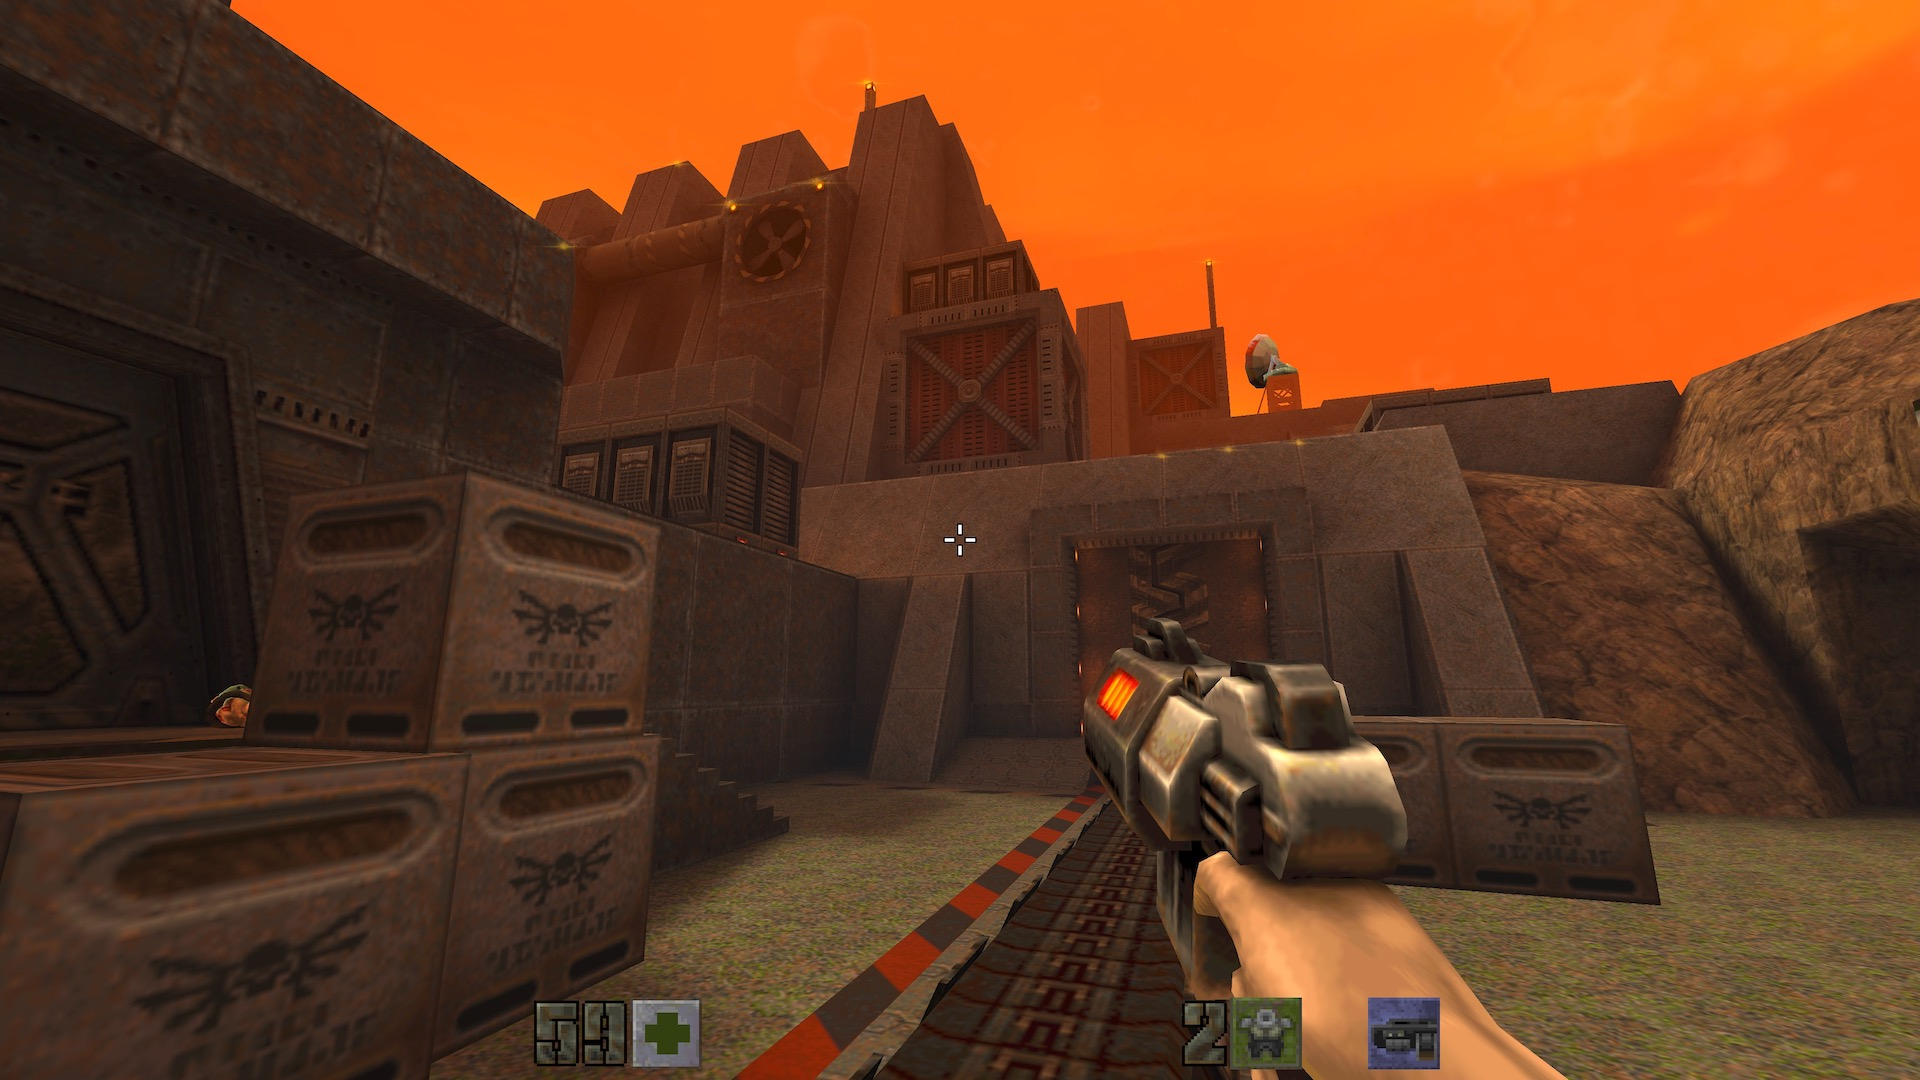 Quake 2 - Sortie surprise du remaster et d'une nouvelle campagne